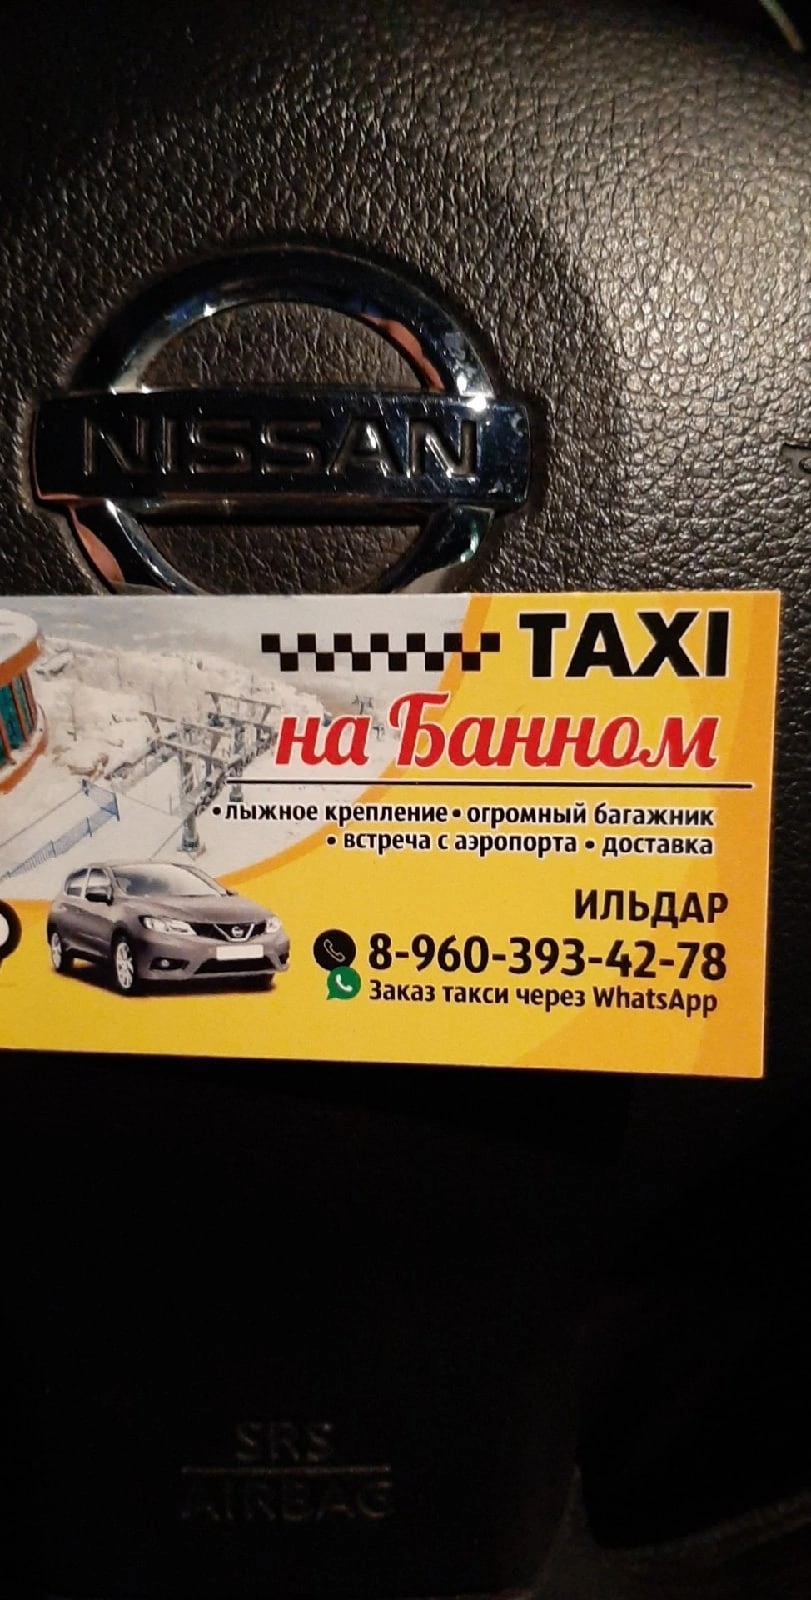 Ильдар Газманов:  Такси на Банном